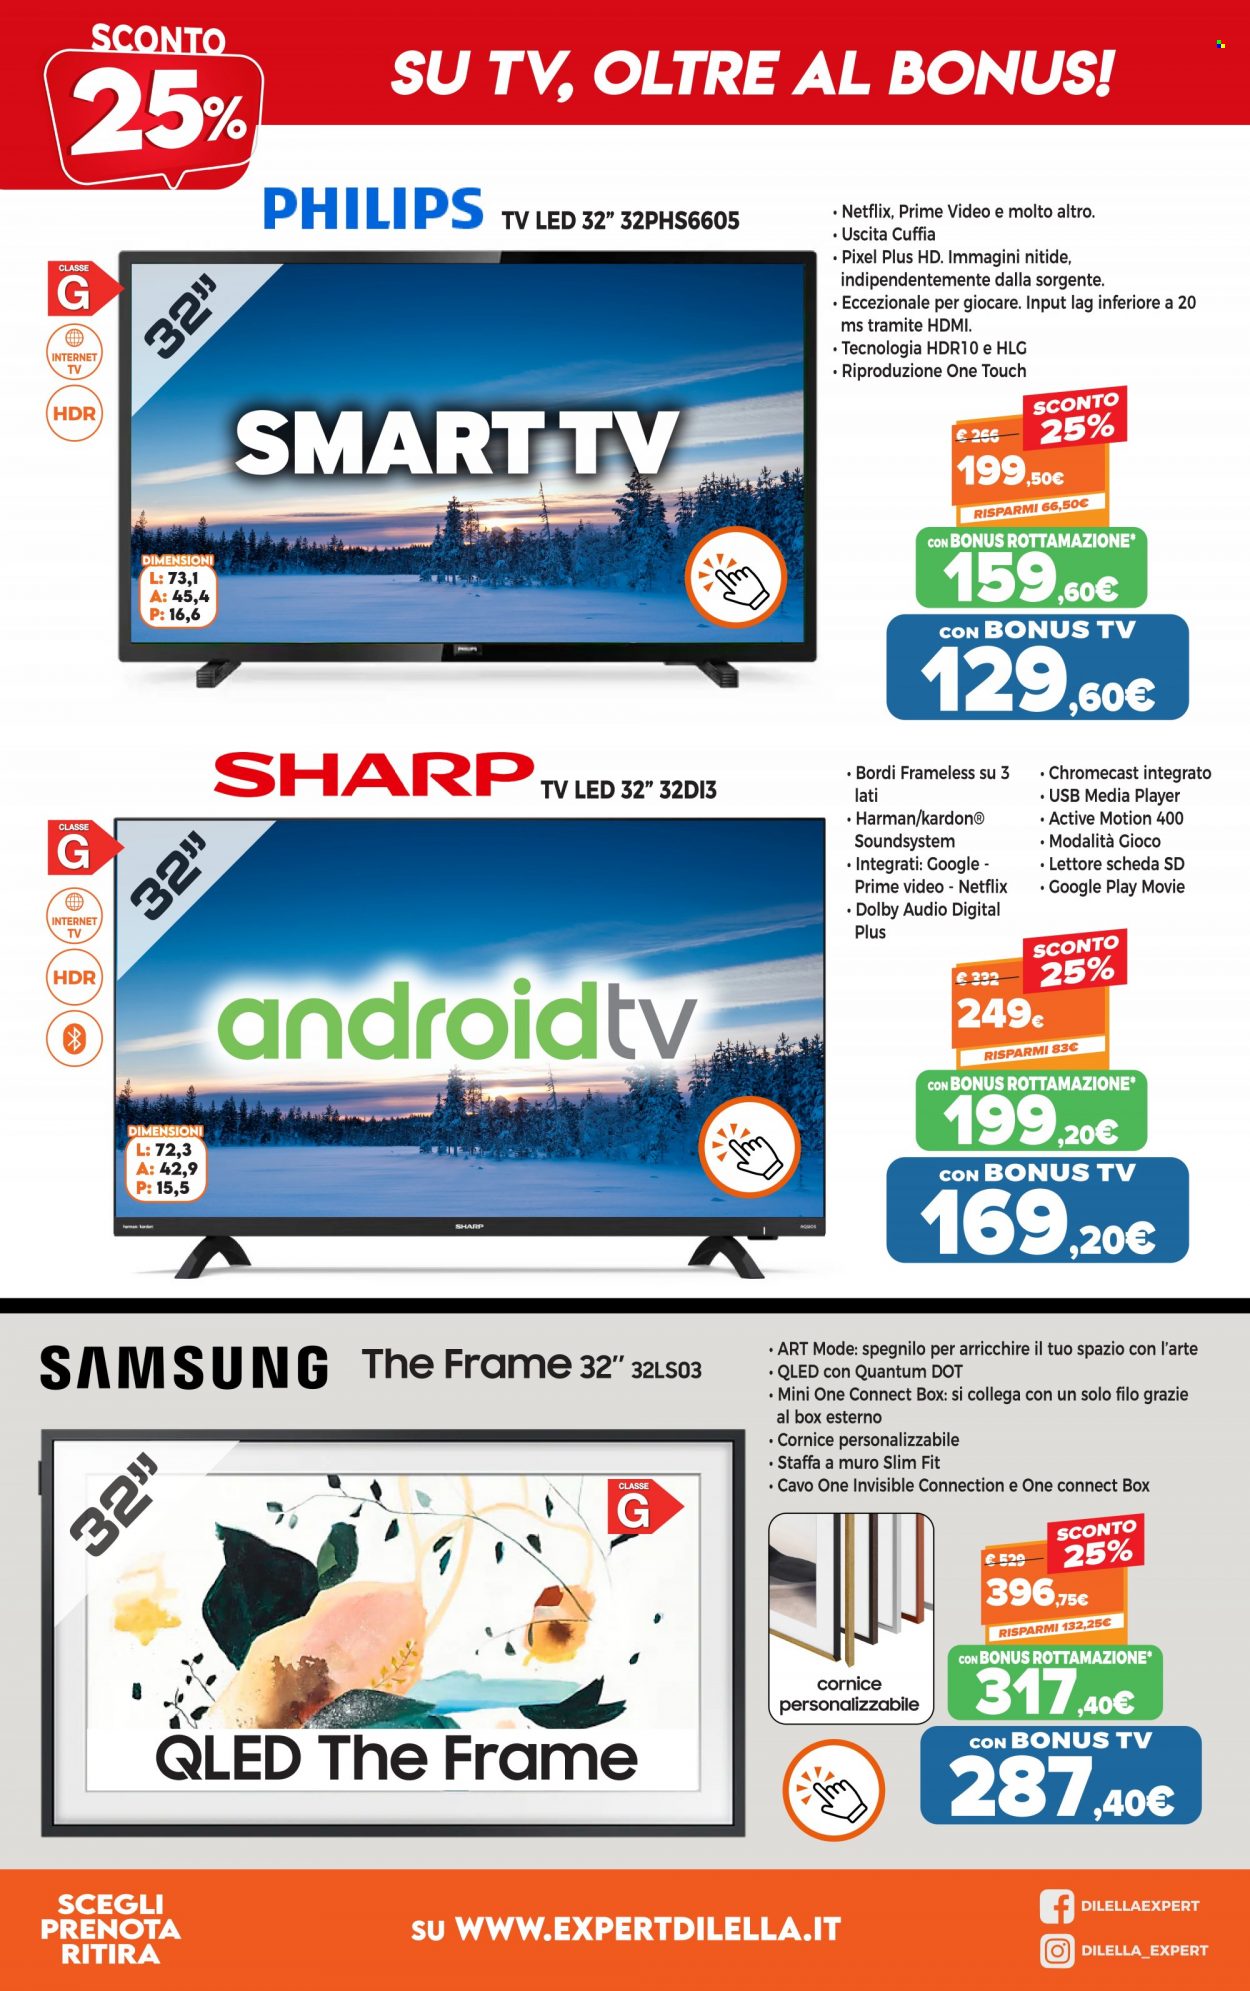 thumbnail - Volantino Expert - 12/1/2022 - 16/1/2022 - Prodotti in offerta - Samsung, Philips, Sharp, Smart TV, LED TV, televisore, Google Chromecast. Pagina 4.